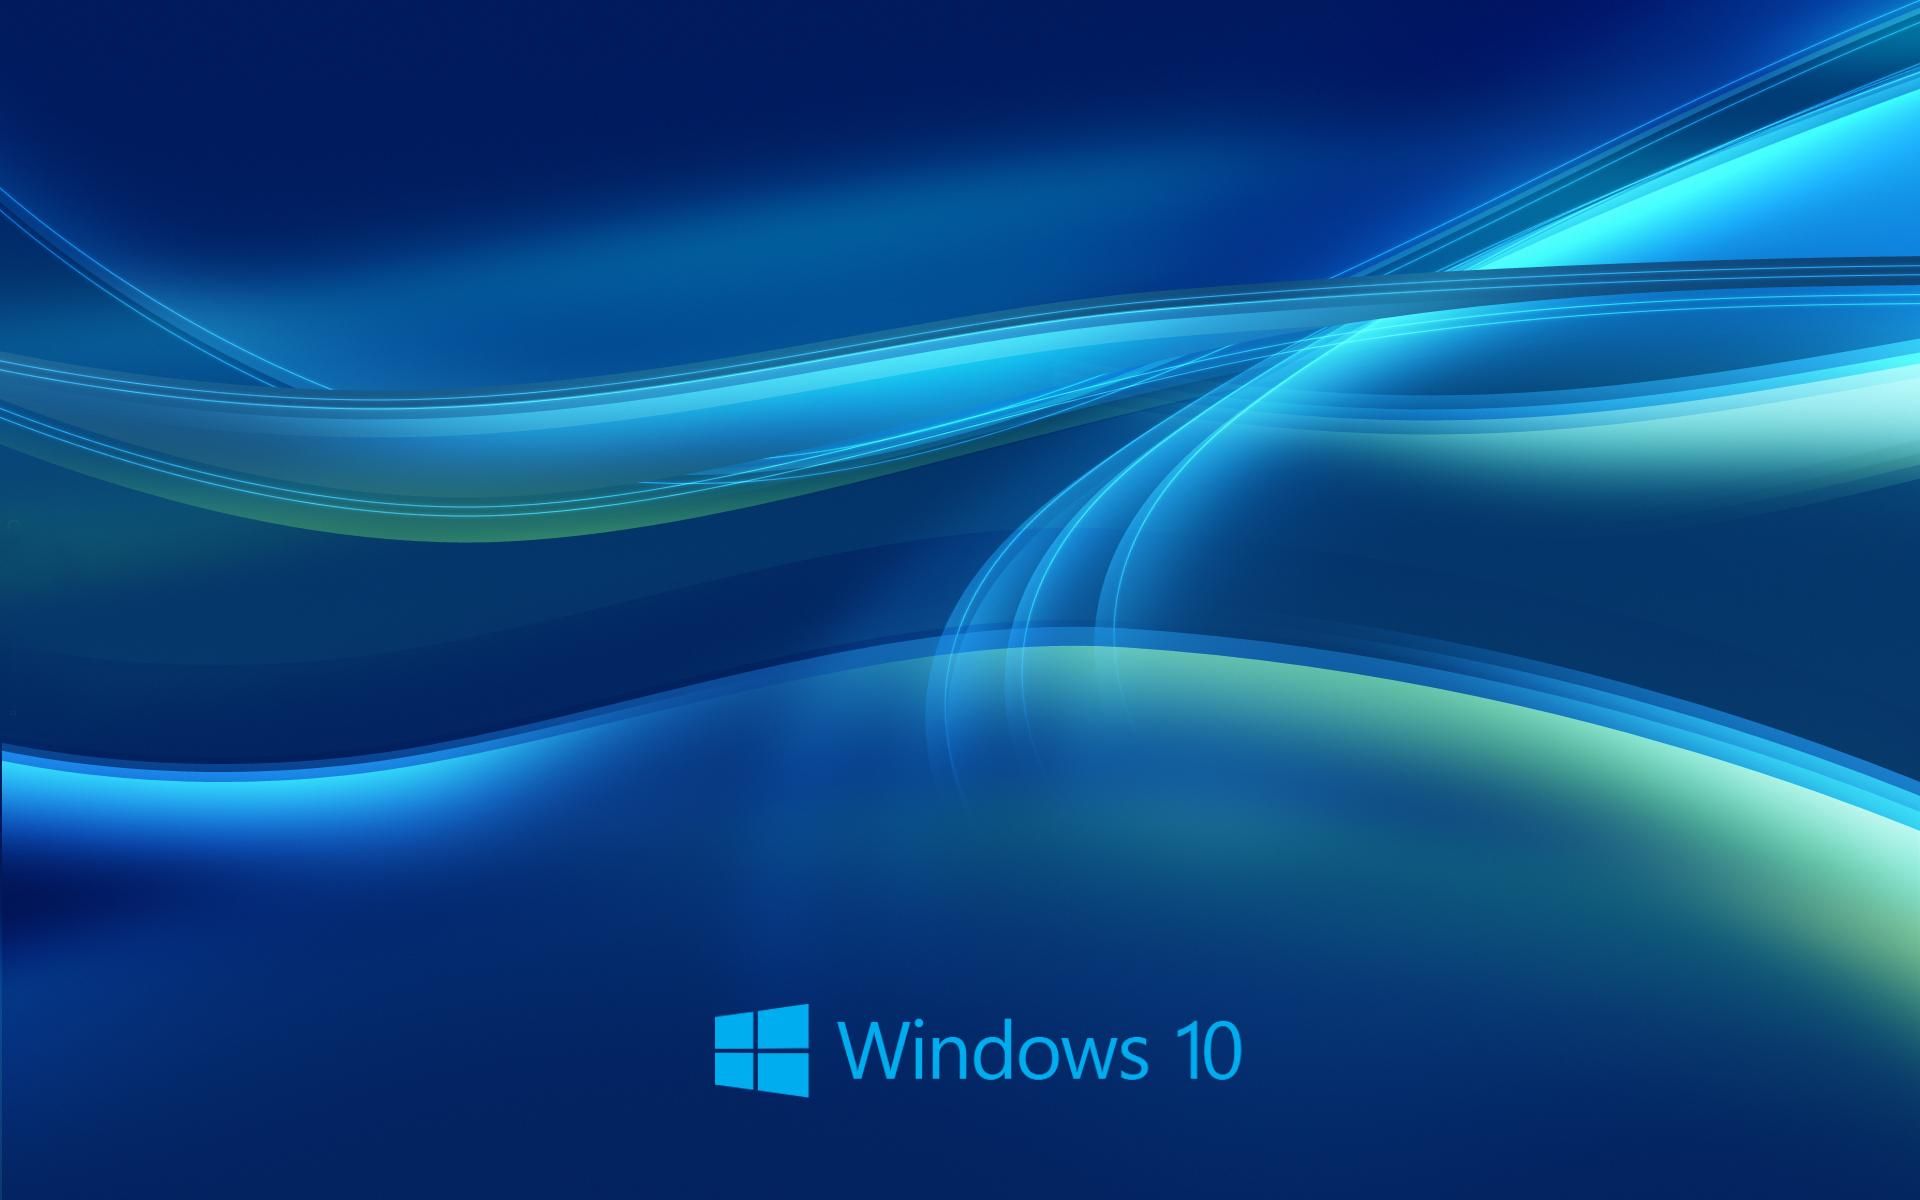 Microsoft приостанавливает дополнительные обновления для Windows 10: что это значит